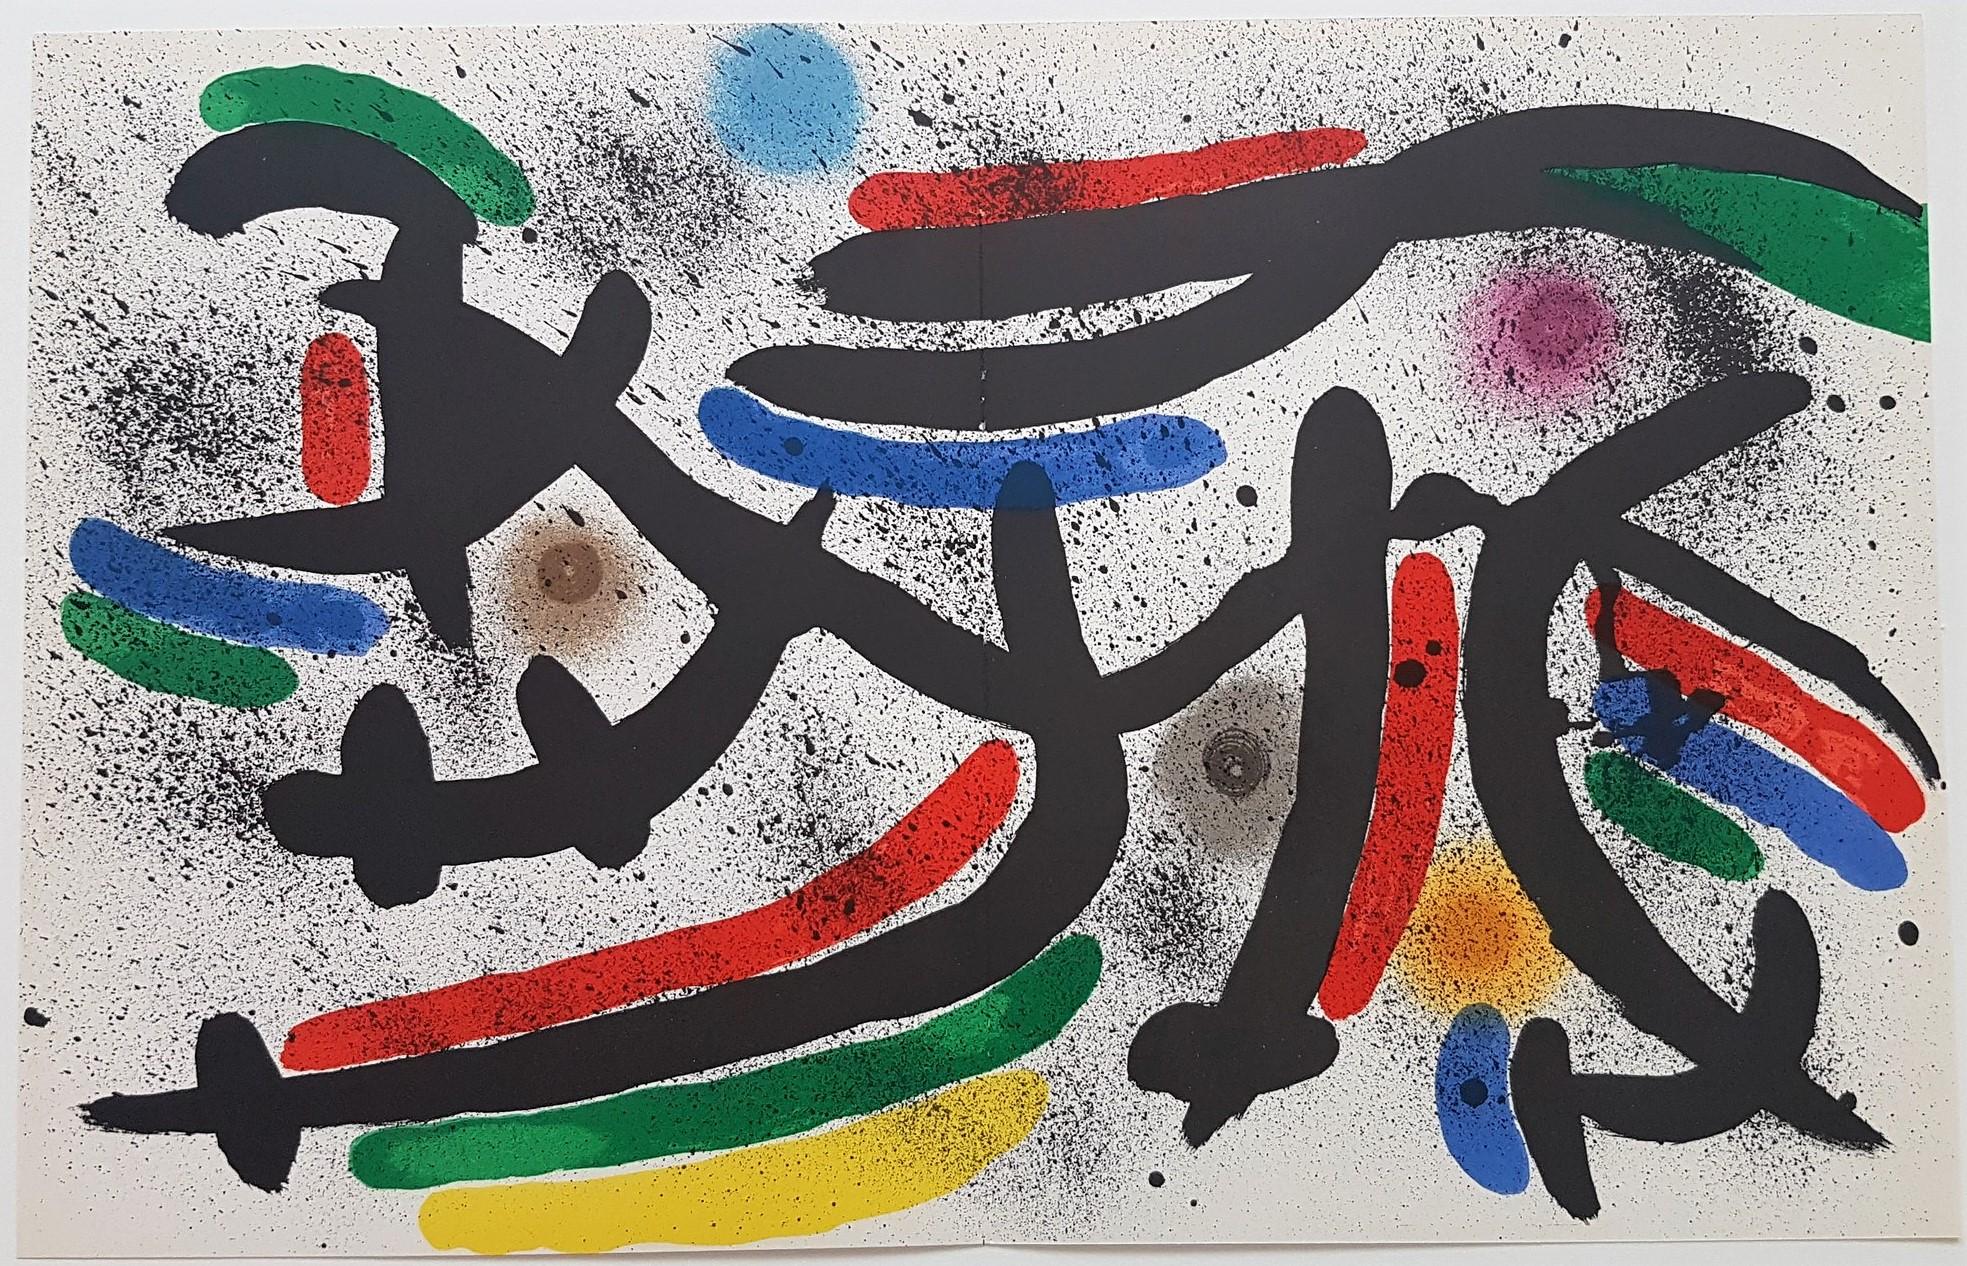 Litografia Original IX - Print by Joan Miró